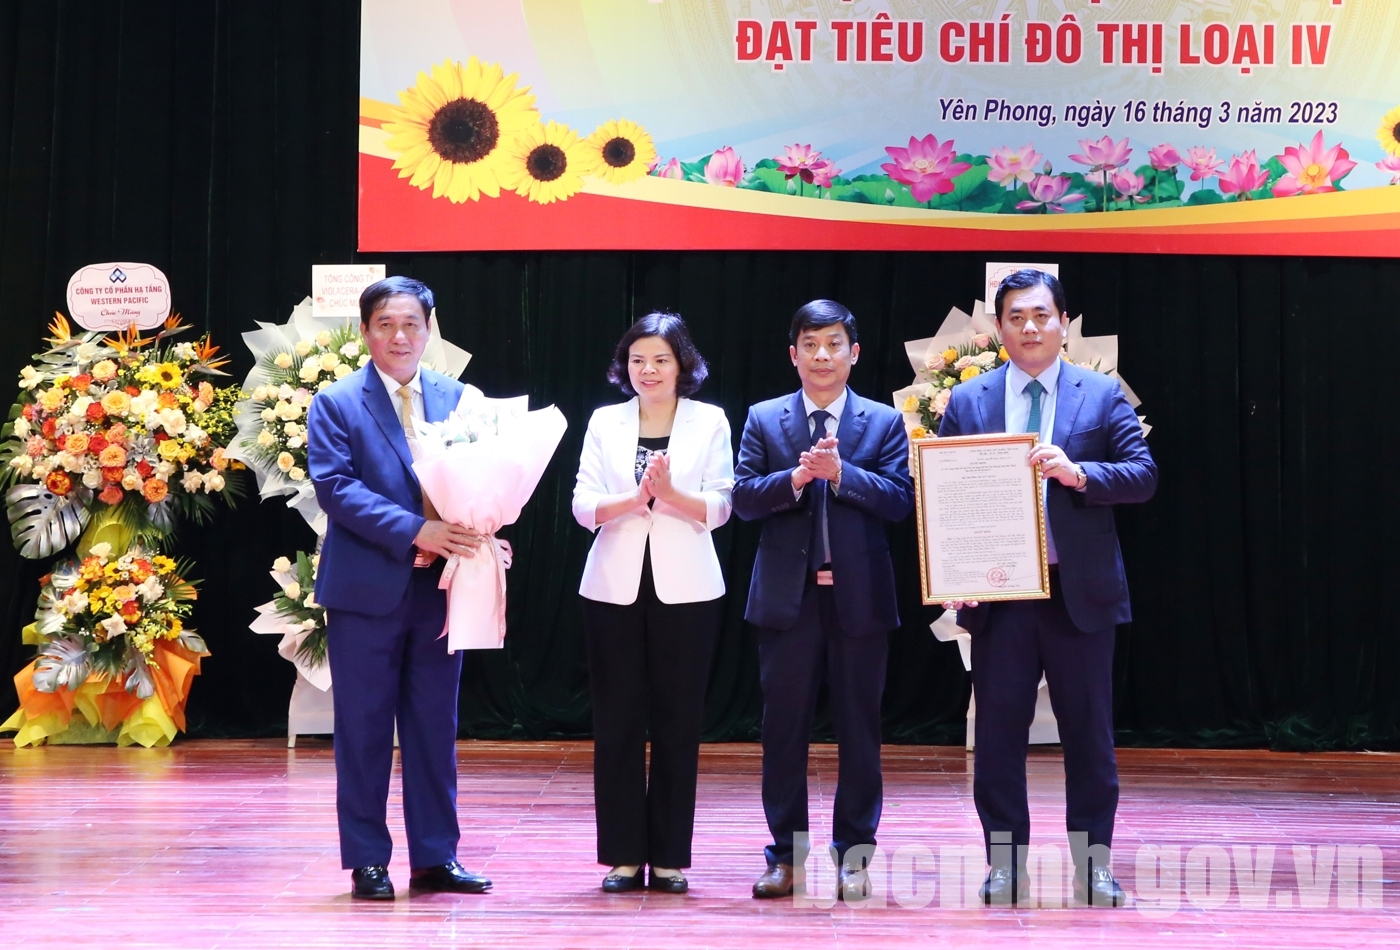 Chủ tịch UBND tỉnh Nguyễn Hương Giang trao Quyết định công nhận đô thị Chờ mở rộng (Đô thị Yên Phong) đạt tiêu chí đô thị loại IV (Ảnh: bacninh.gov.vn).